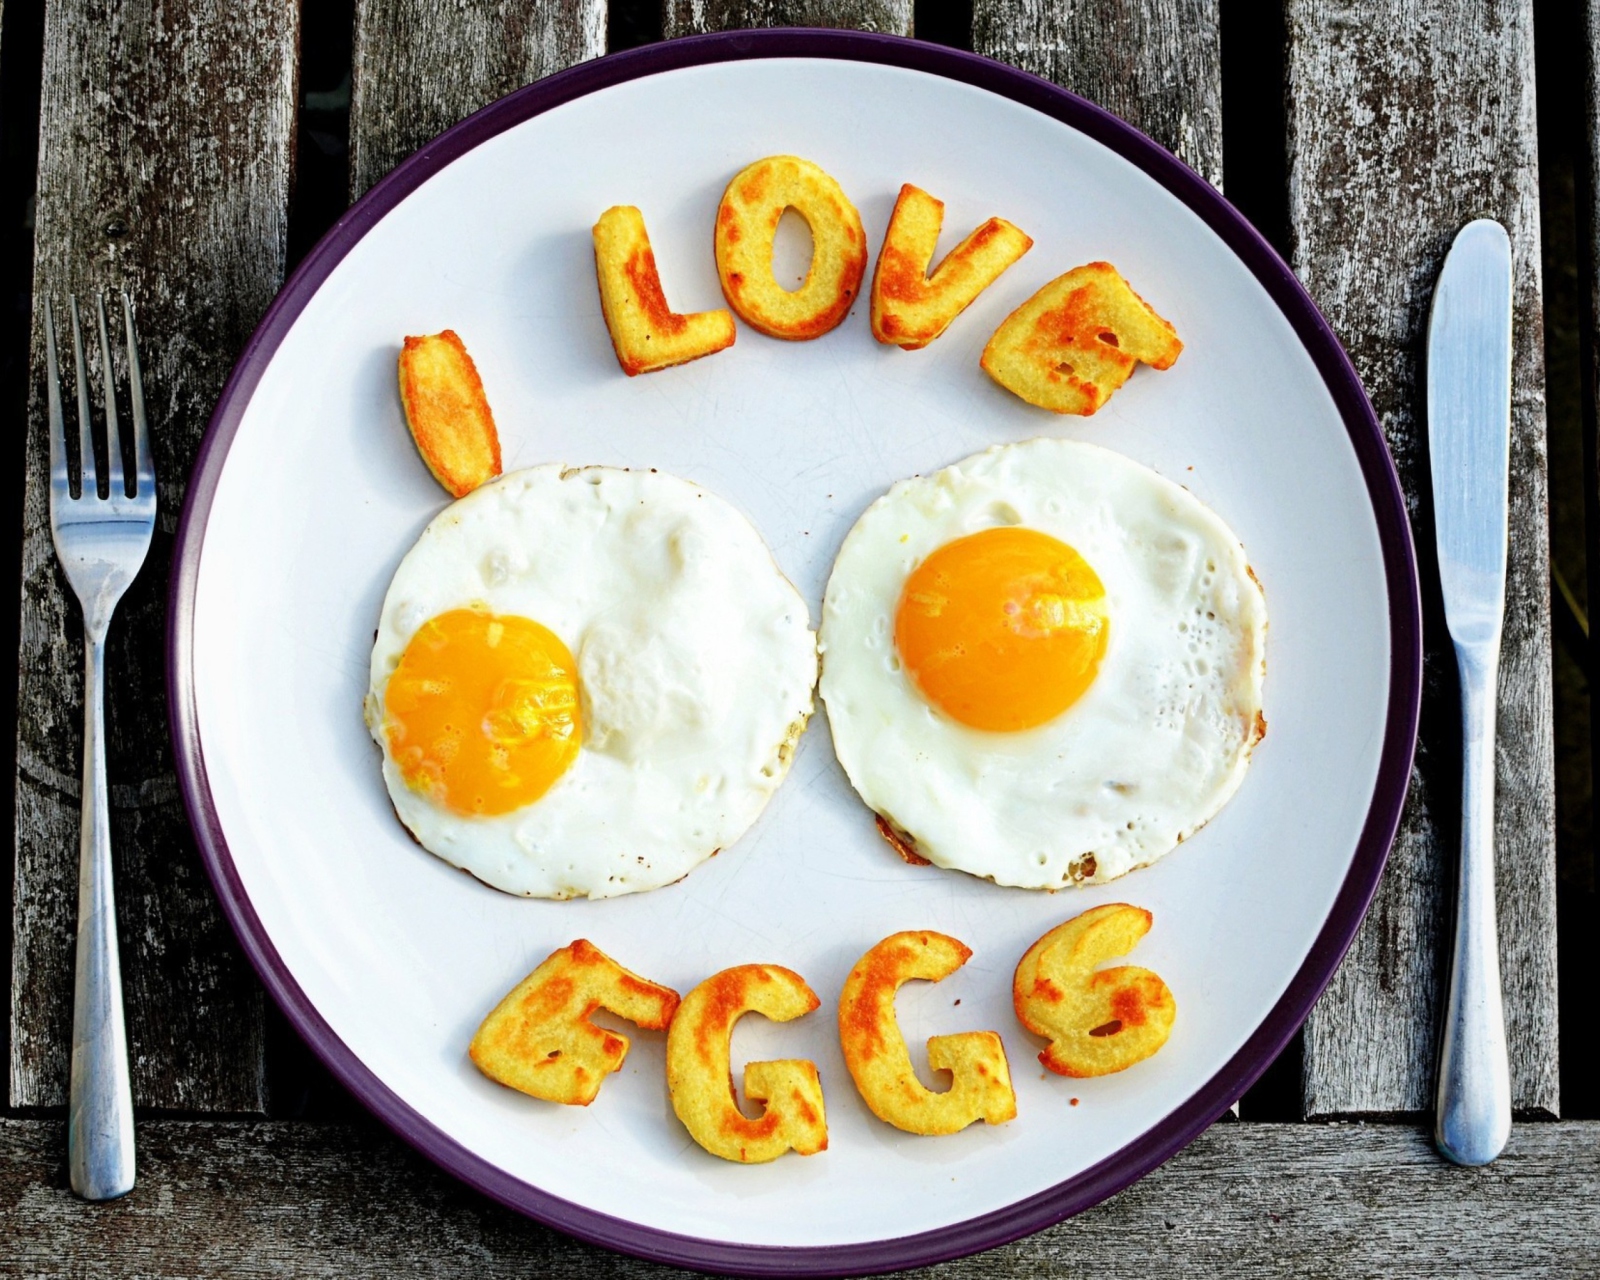 Sfondi I Love Eggs 1600x1280